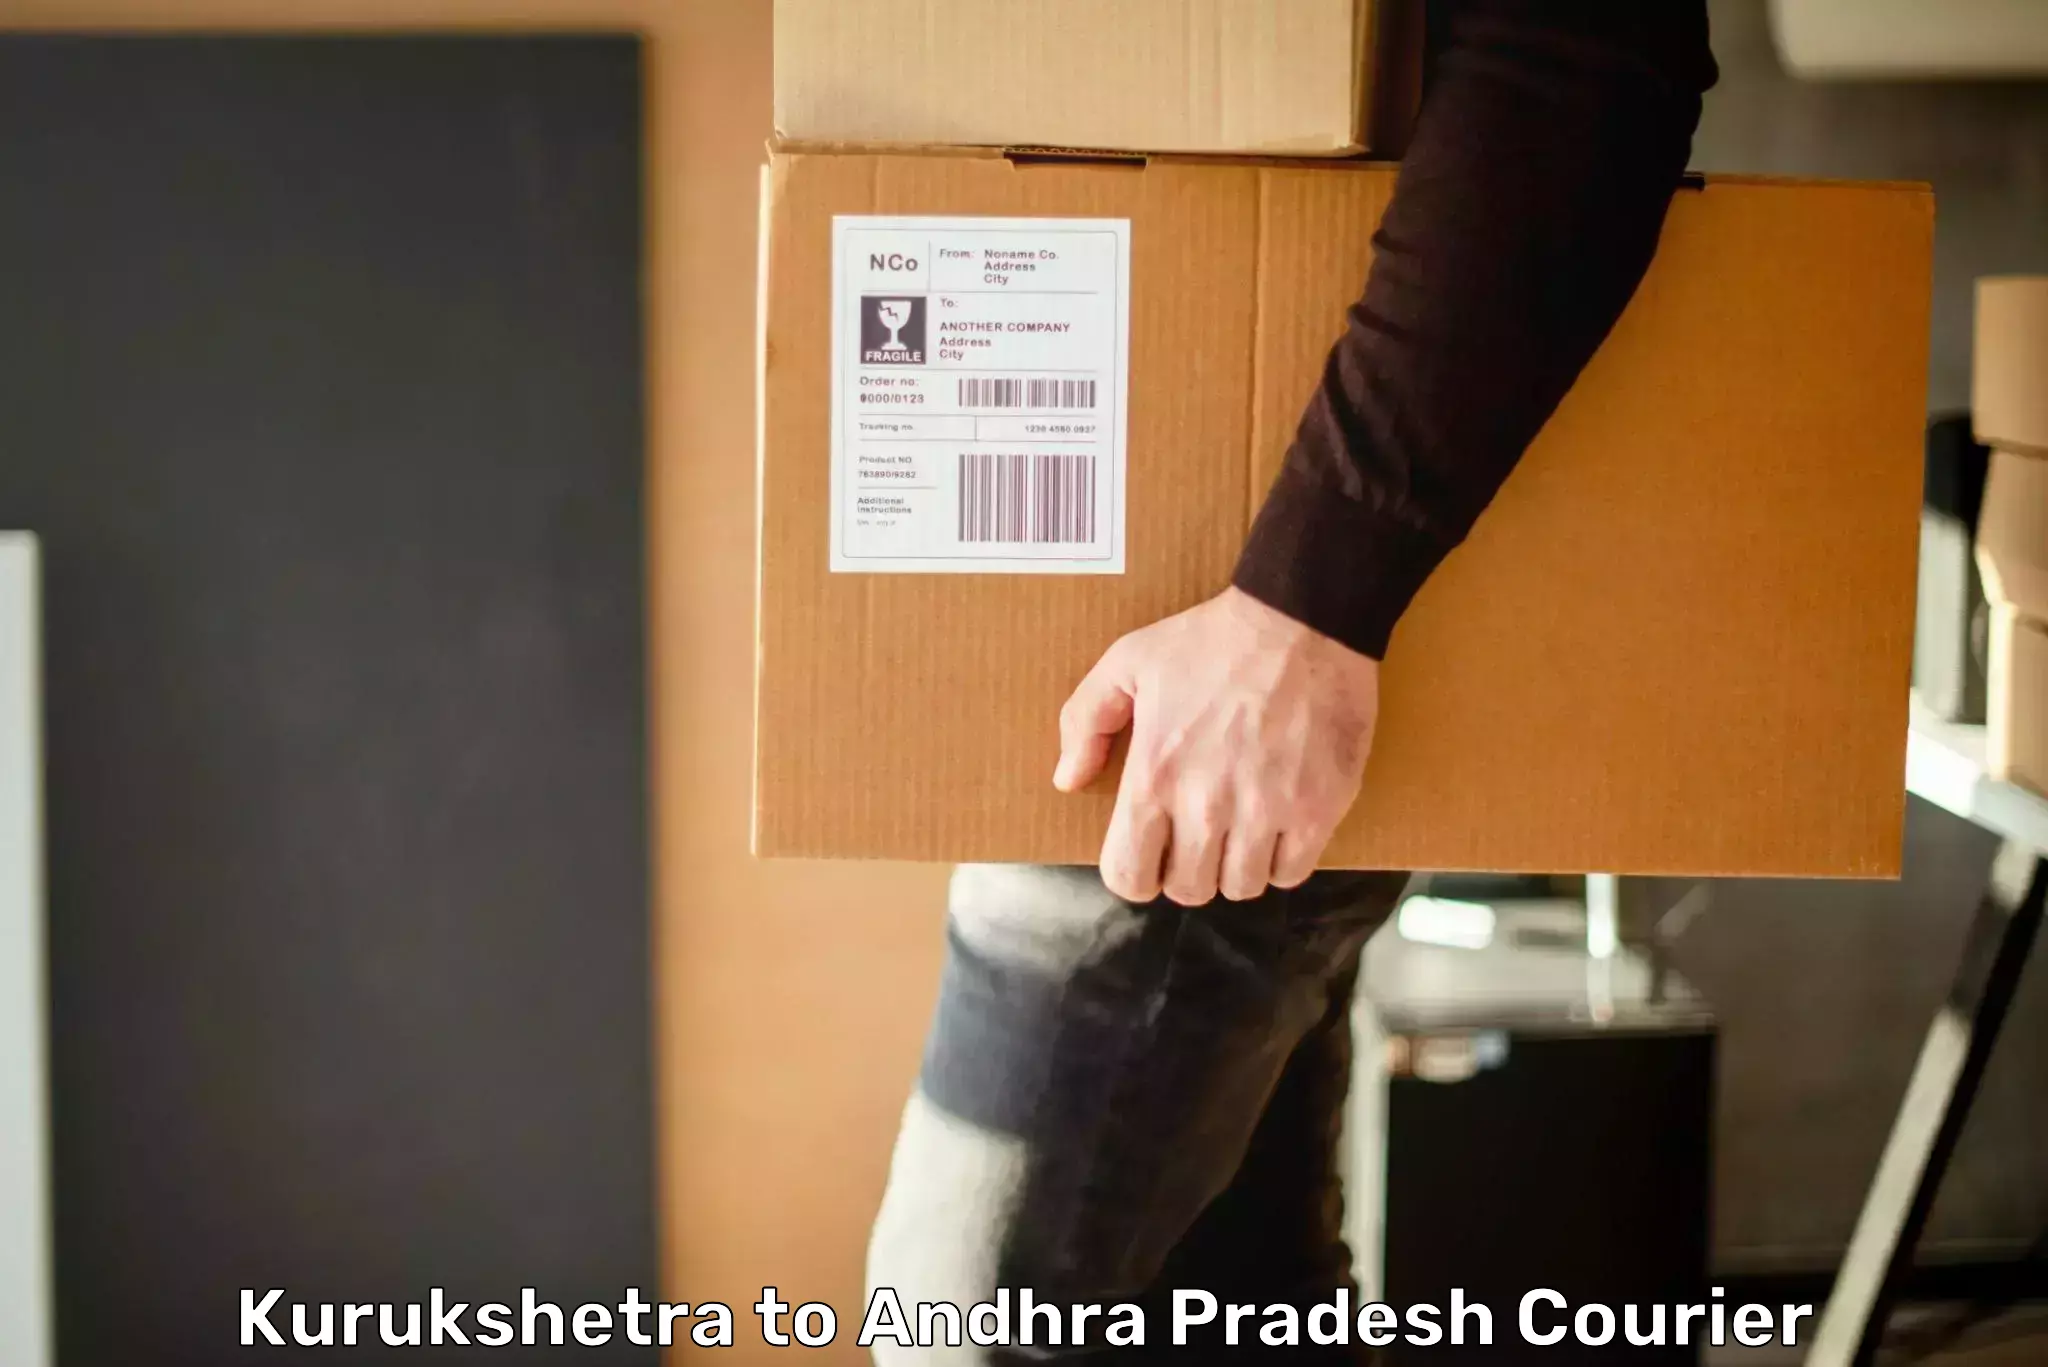 Express logistics providers Kurukshetra to Kaikaluru